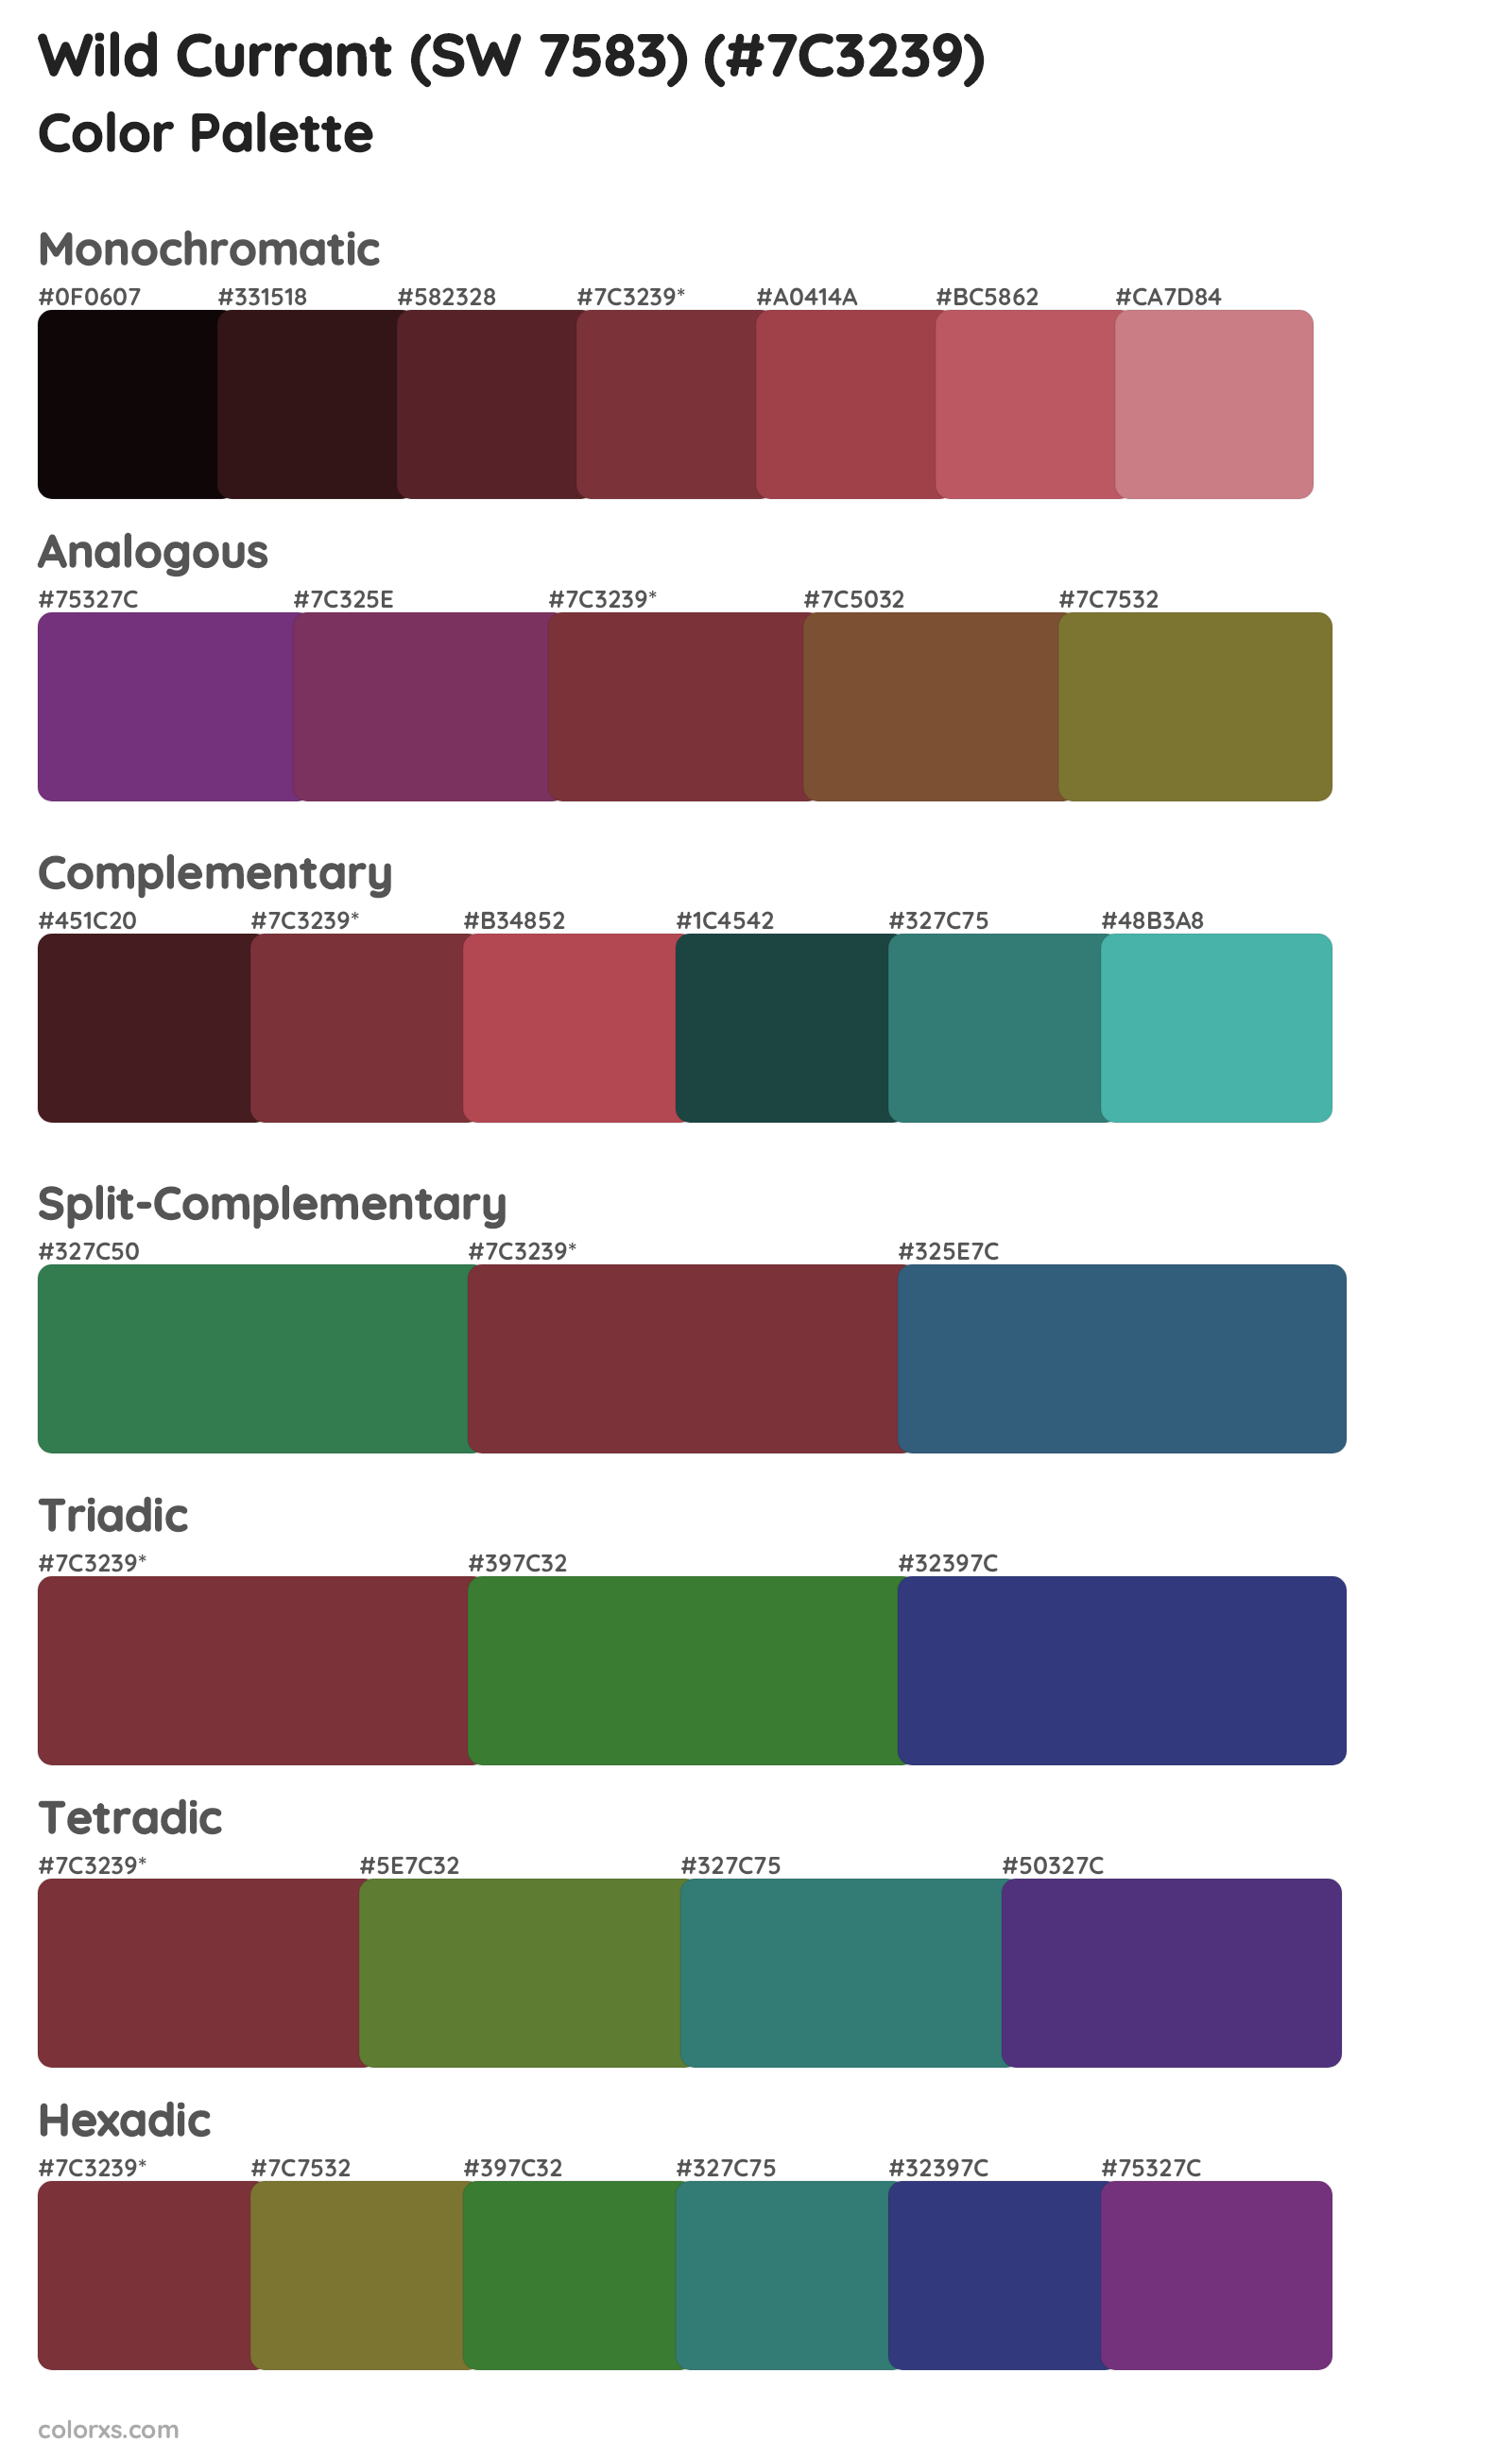 Wild Currant (SW 7583) Color Scheme Palettes